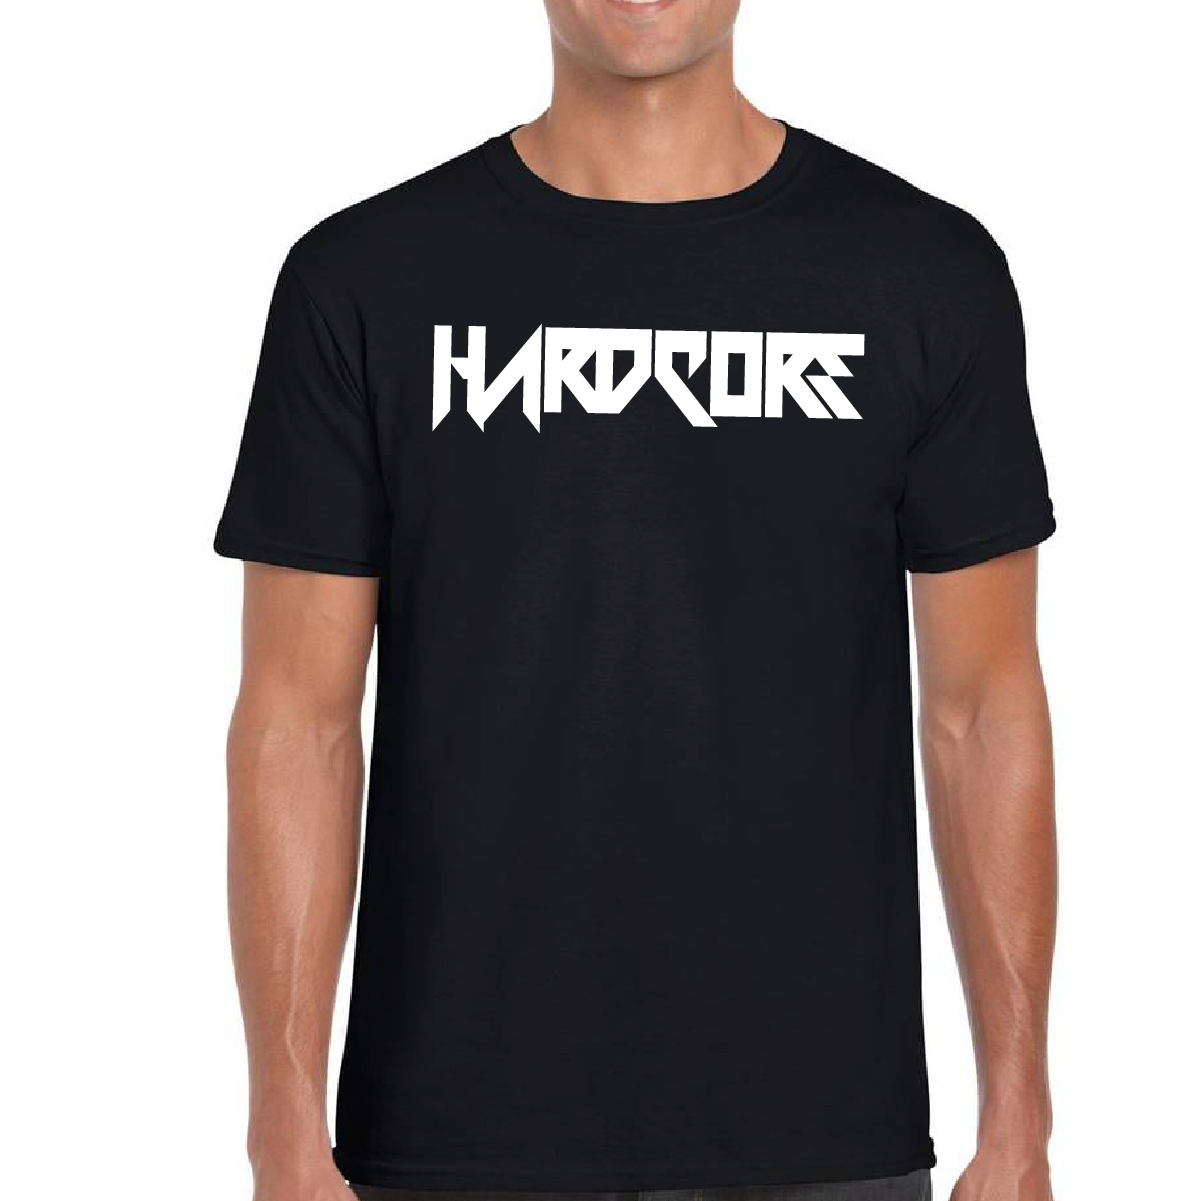 Hardcore tshirts style harder – XXL